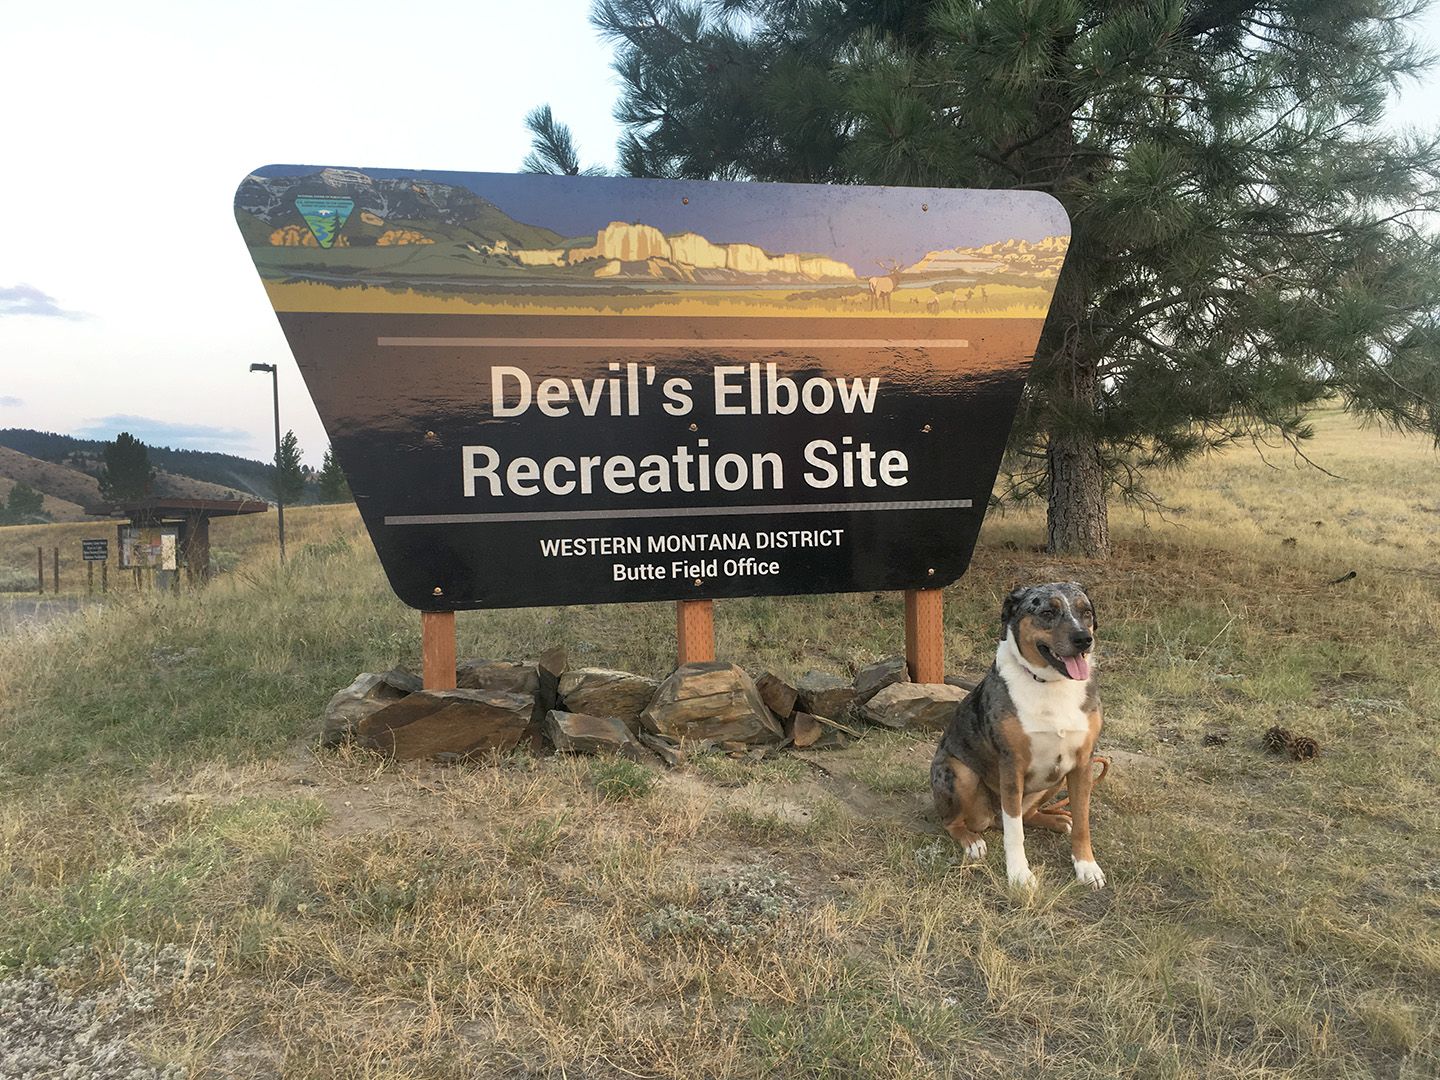 RV park review:  Devil's Elbow Recreation Site